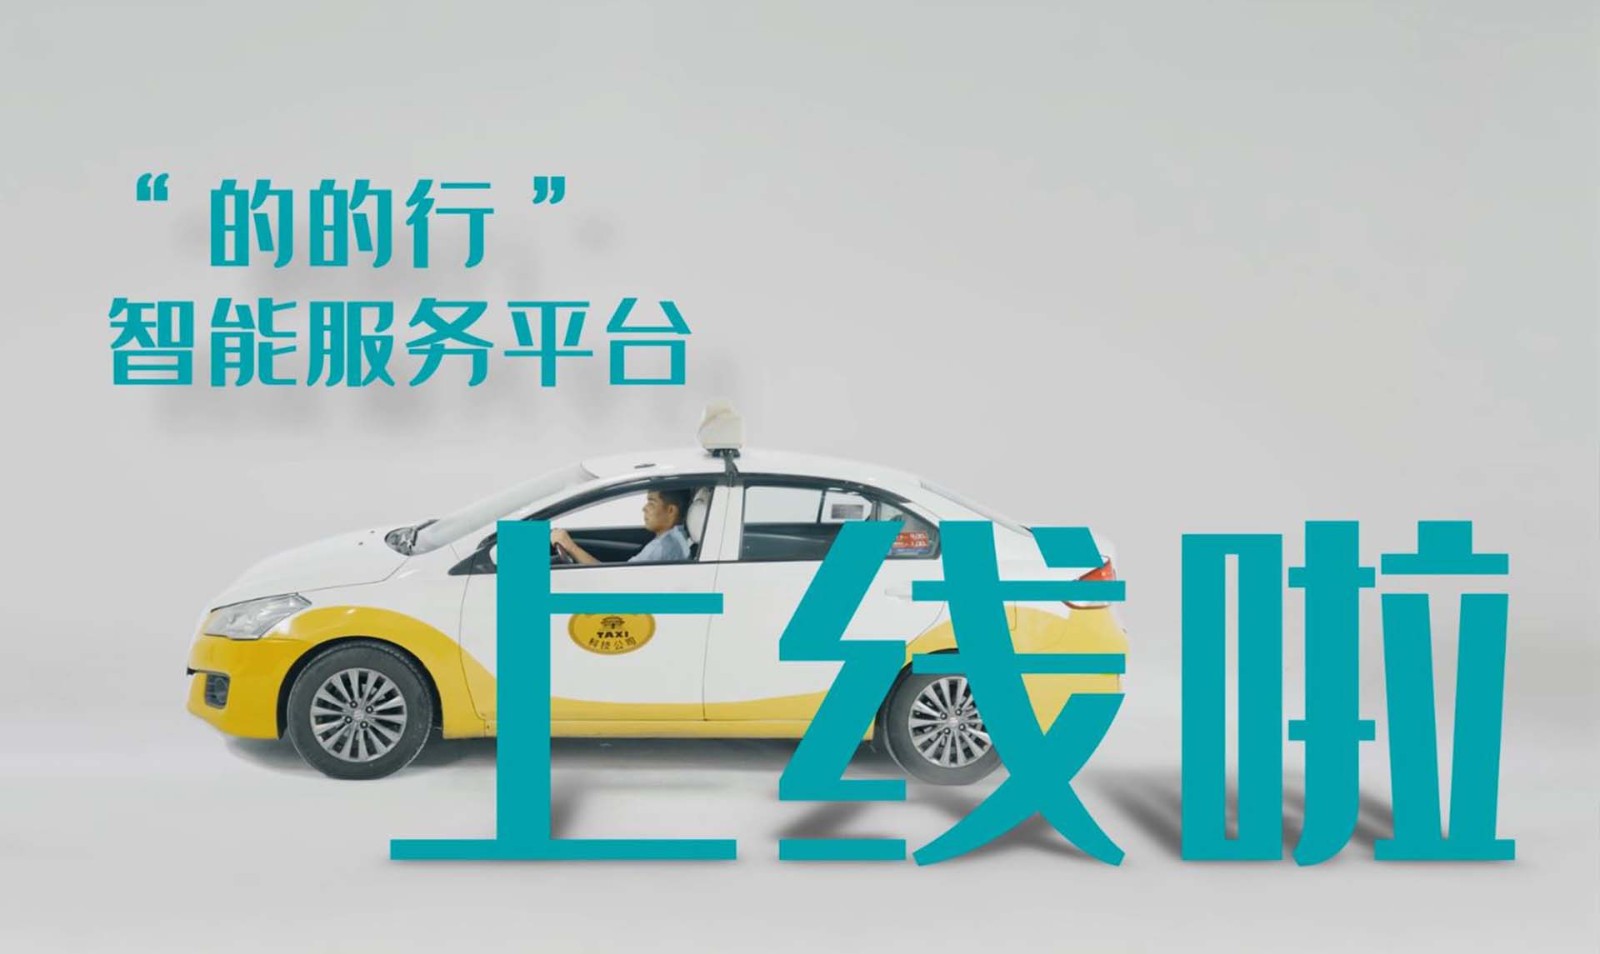 中国农业银行沈阳分行“的的行”智能服务平台宣传广告